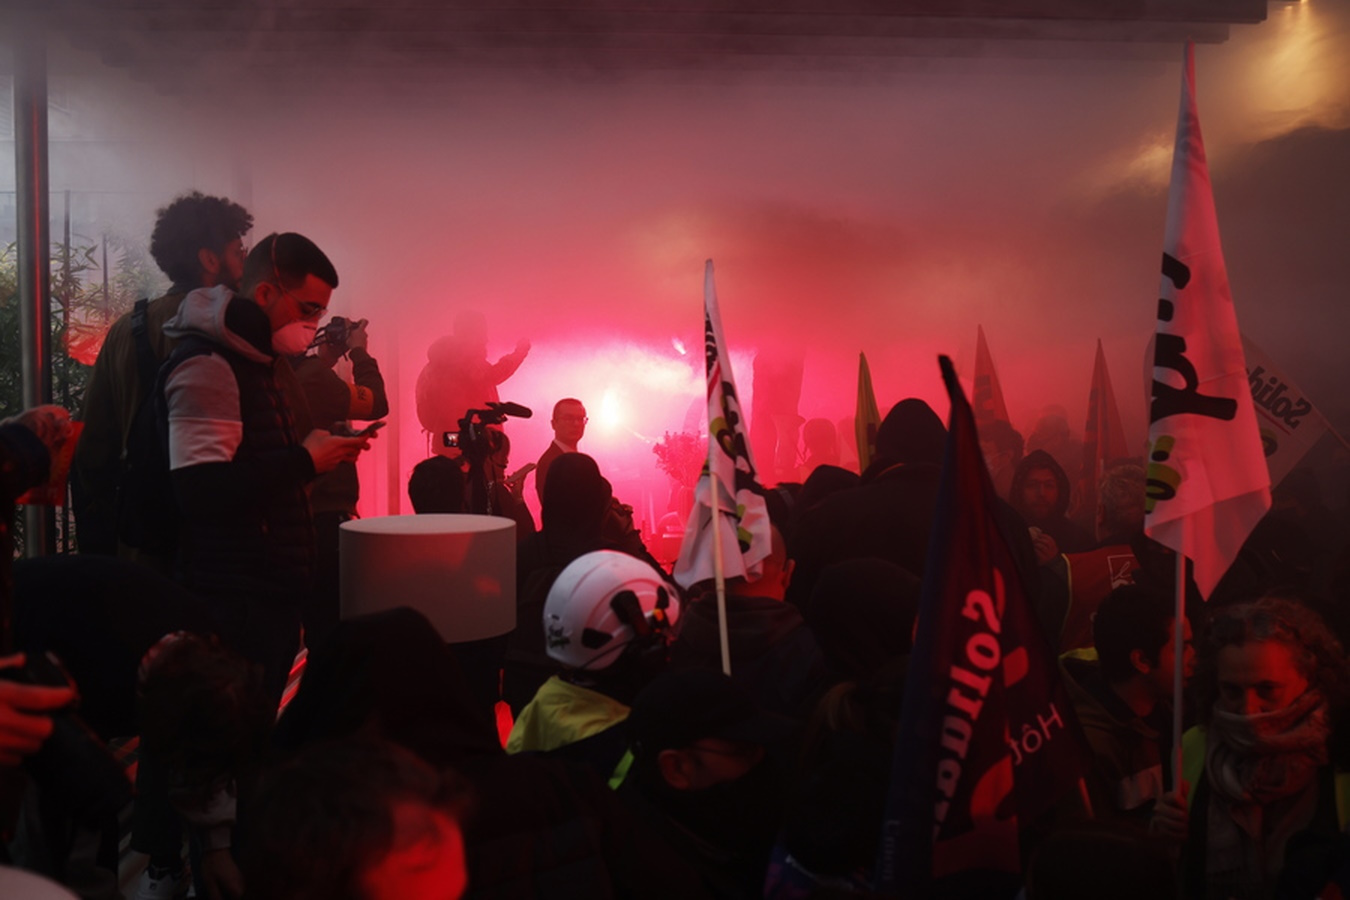 Παρίσι: Διαδηλωτές εισέβαλαν στα γραφεία της Louis Vuitton με σημαίες και καπνογόνα